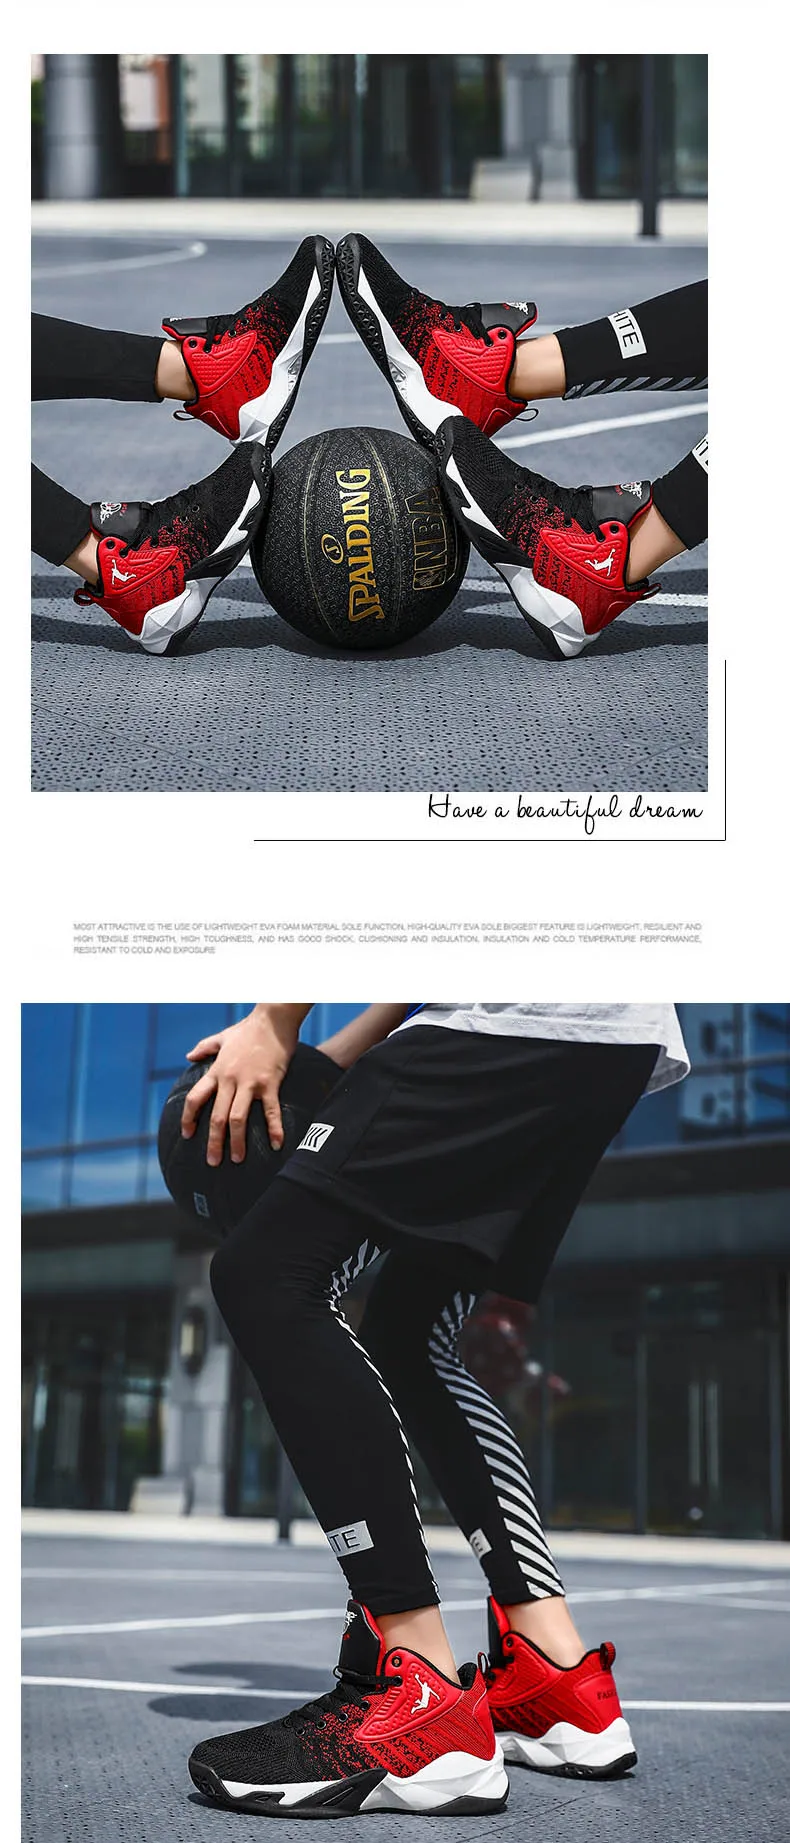 Новинка, Мужская баскетбольная обувь суперзвезды Jordan, баскетбольные кроссовки для женщин, парная обувь Lebron, дышащая Спортивная обувь Jordan для фитнеса